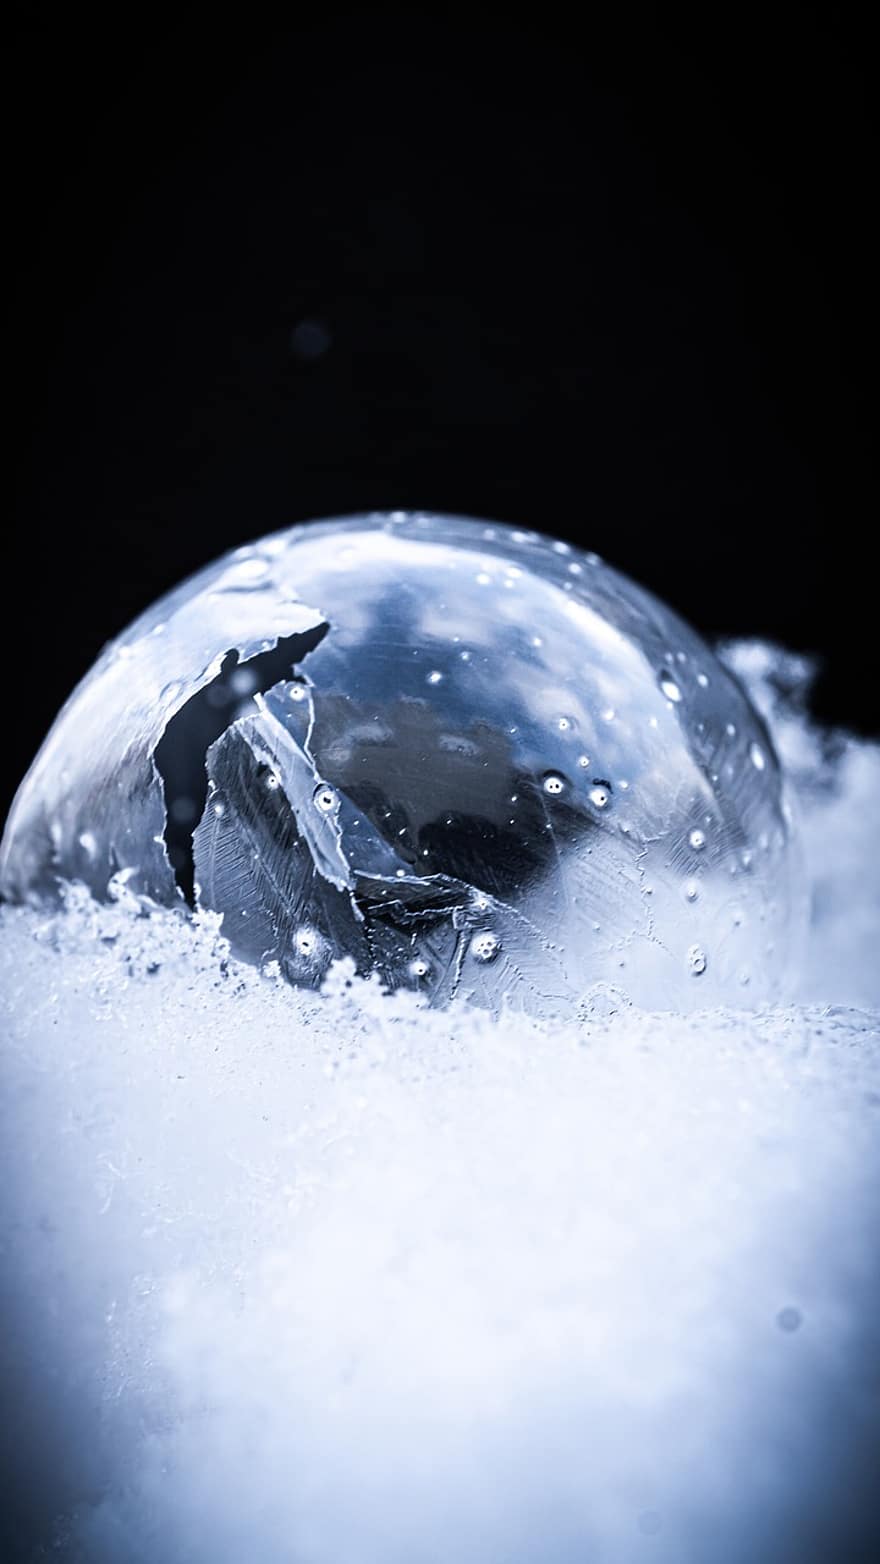 bombolla, congelat, neu, gel, cristalls de gel, gelades, hivern, bombolla de sabó, pilota, fred, nevat